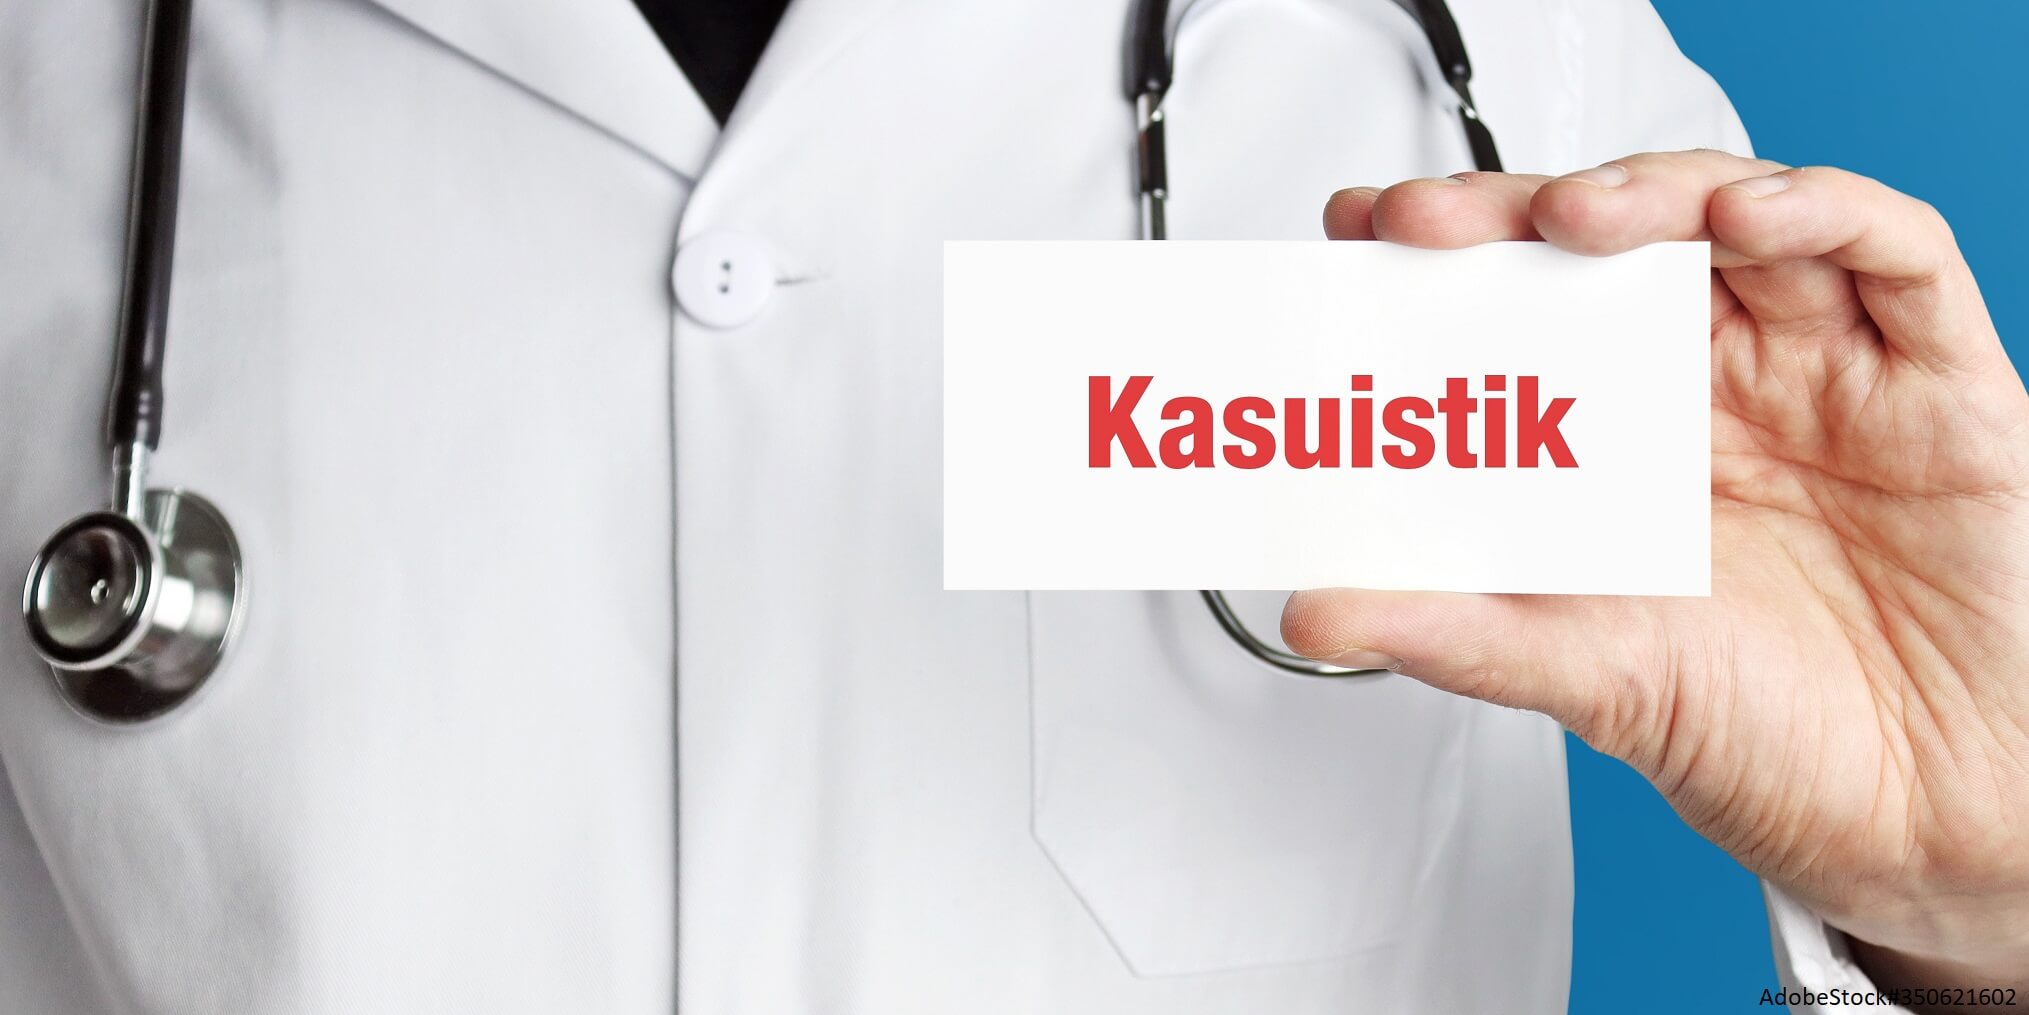 Arzt mit Stethoskop hält Schild mit Aufschrift "Kasuistik"